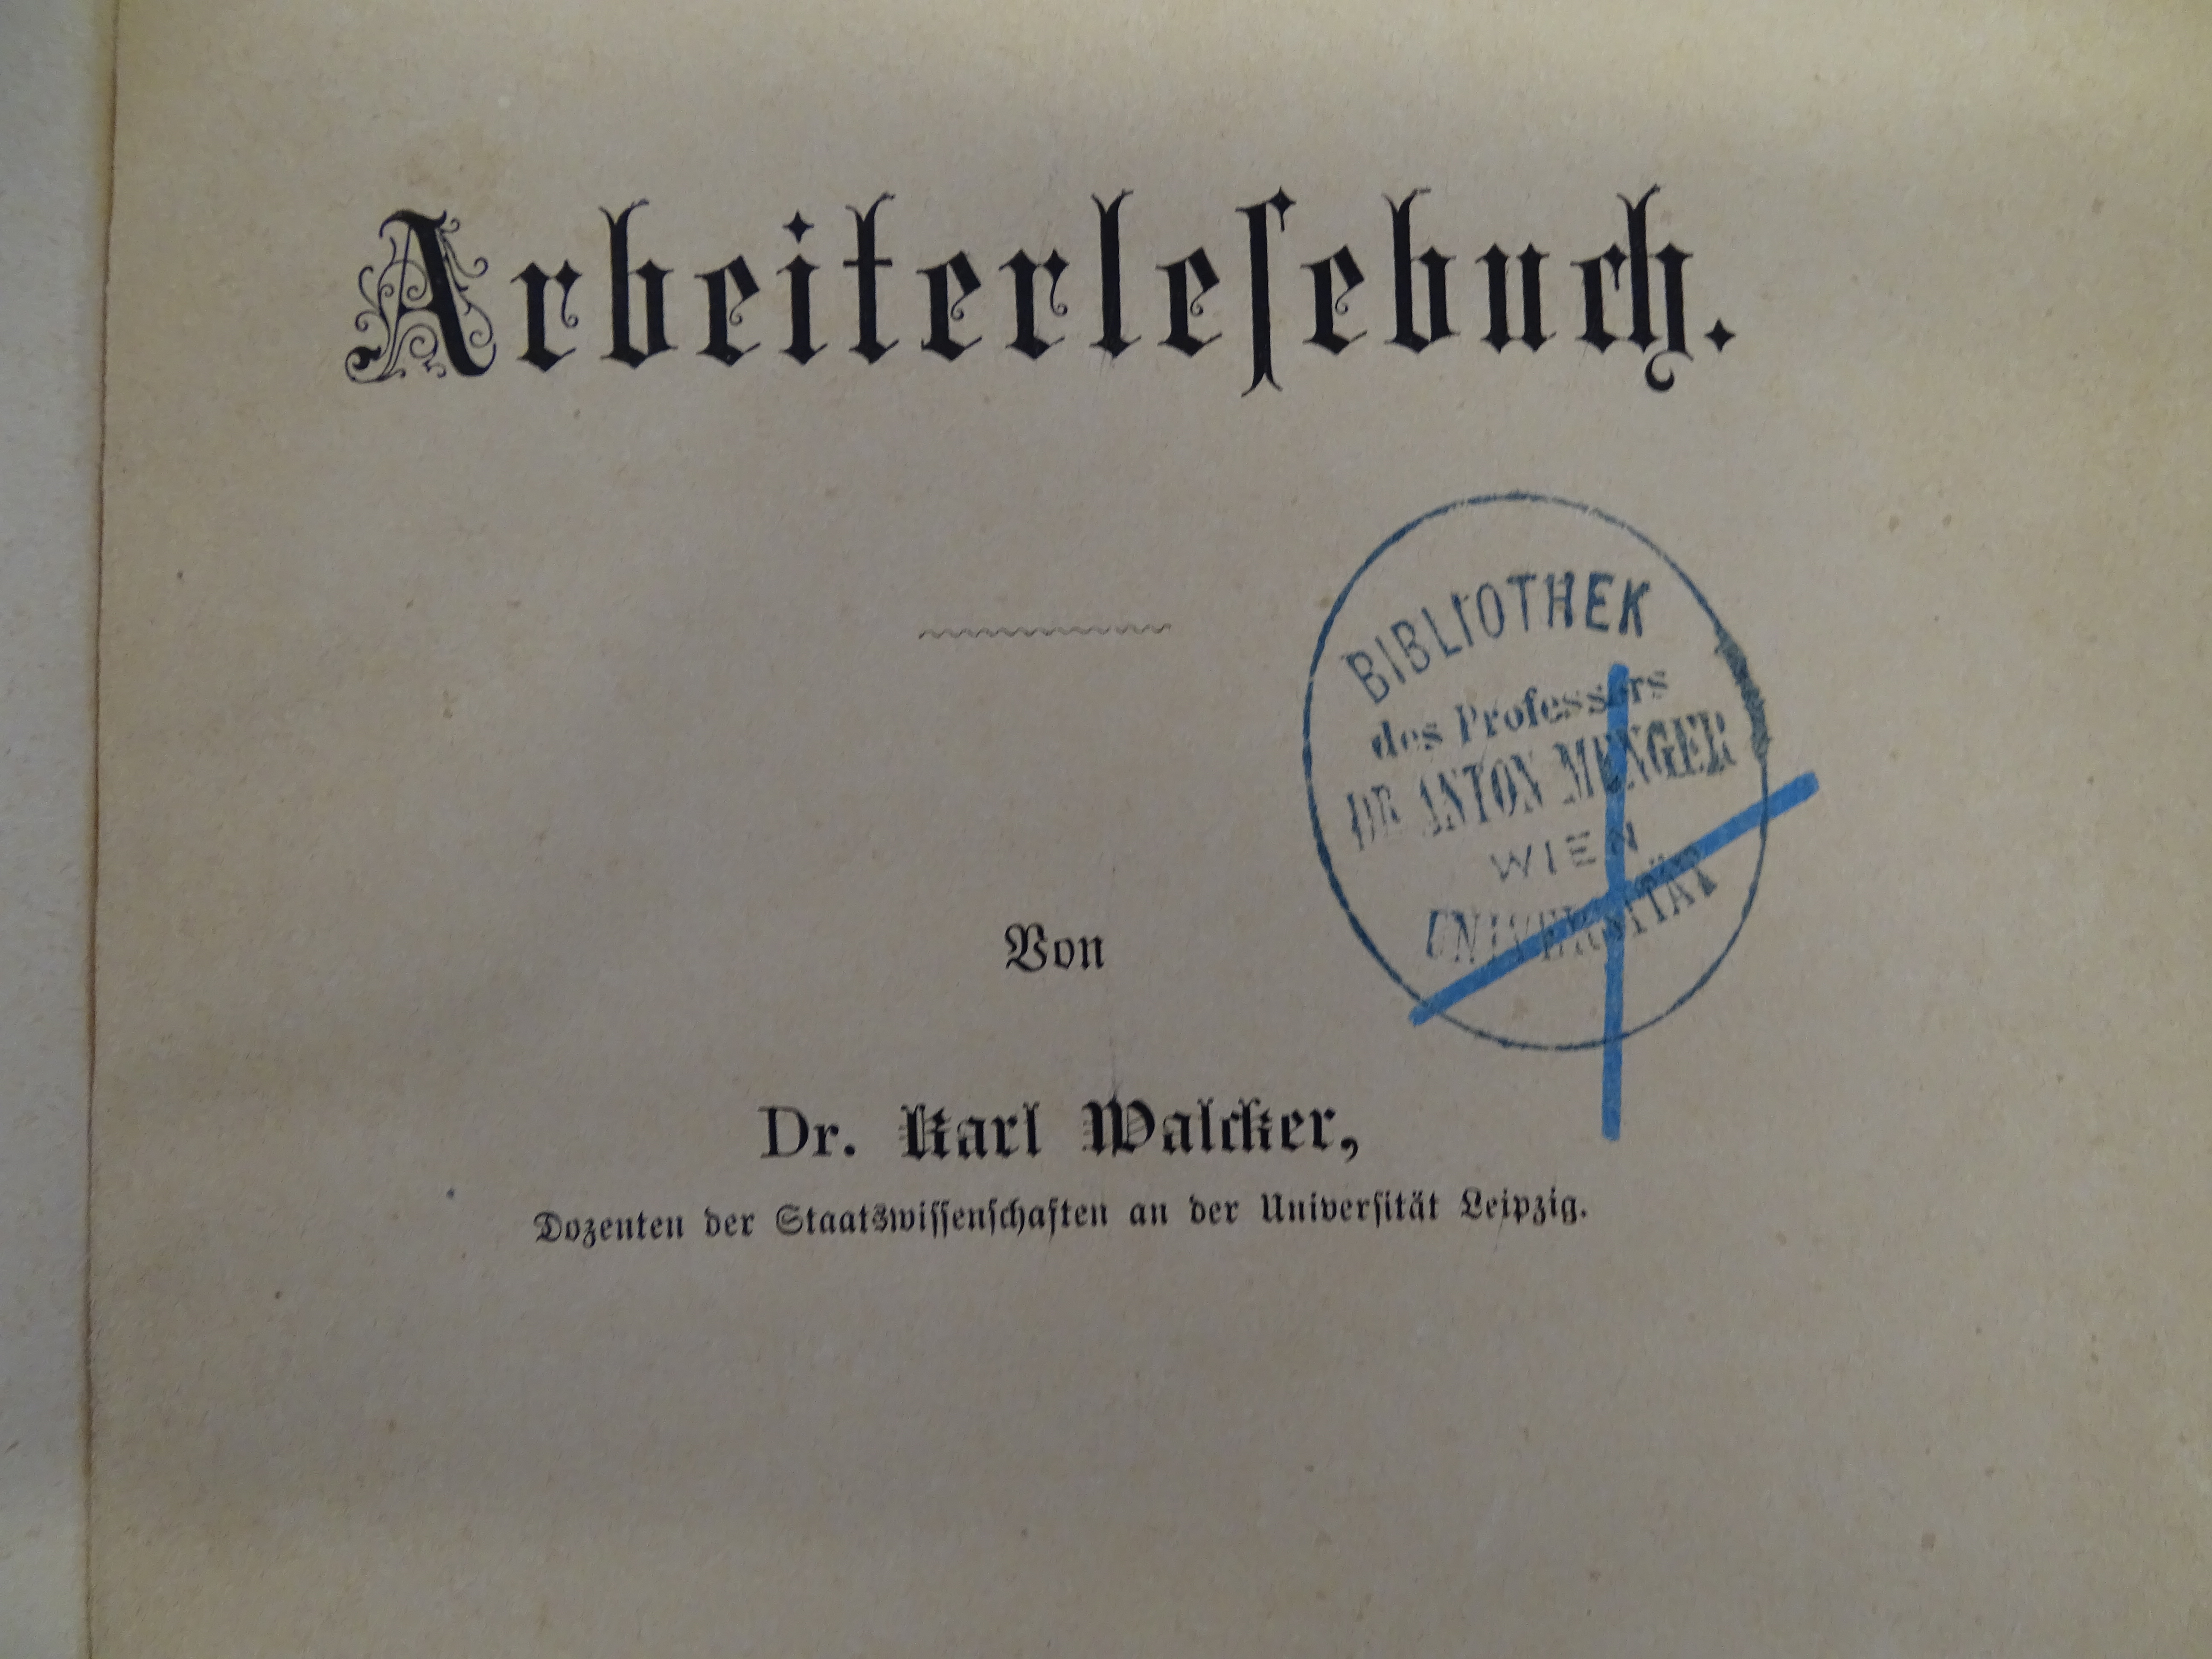 Durchgestrichener Stempel von Professor Anton Menger Univeristät Wien auf dem Frontispiz eines Buches